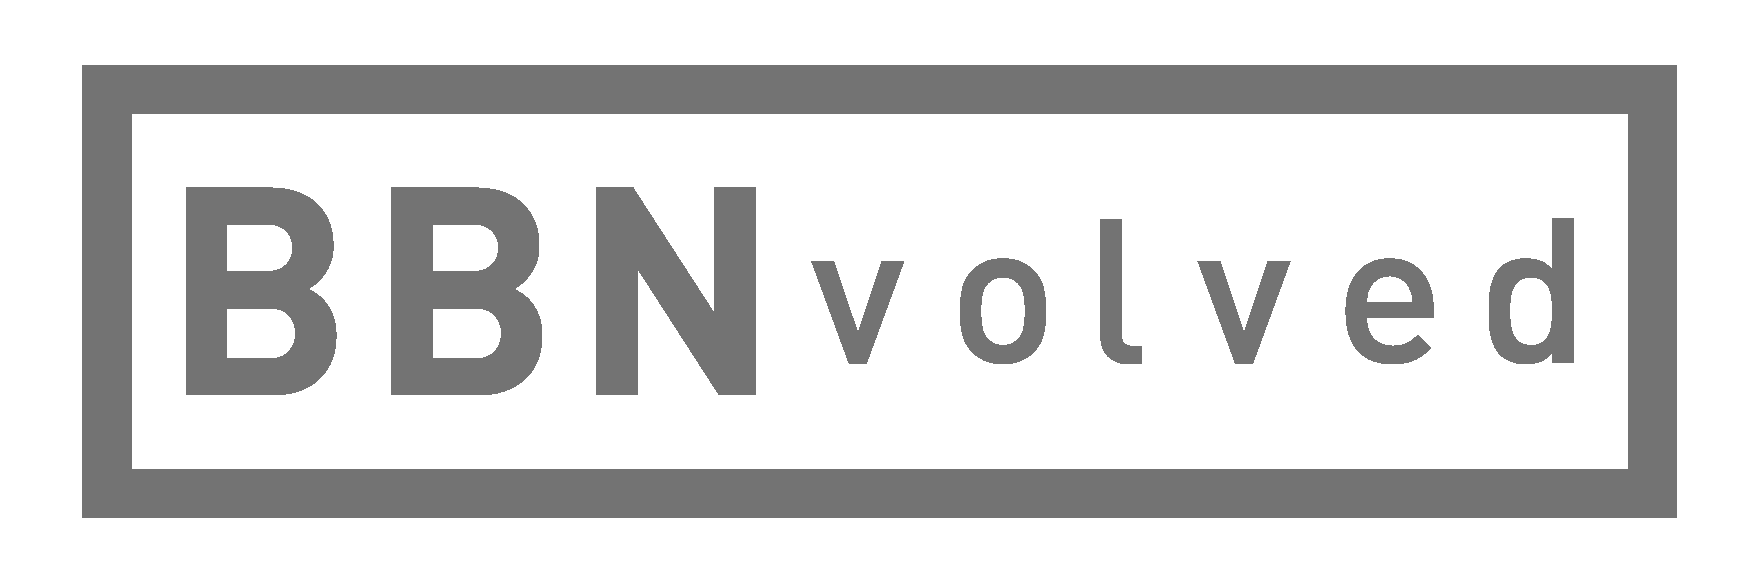 grey BBnvolved logo